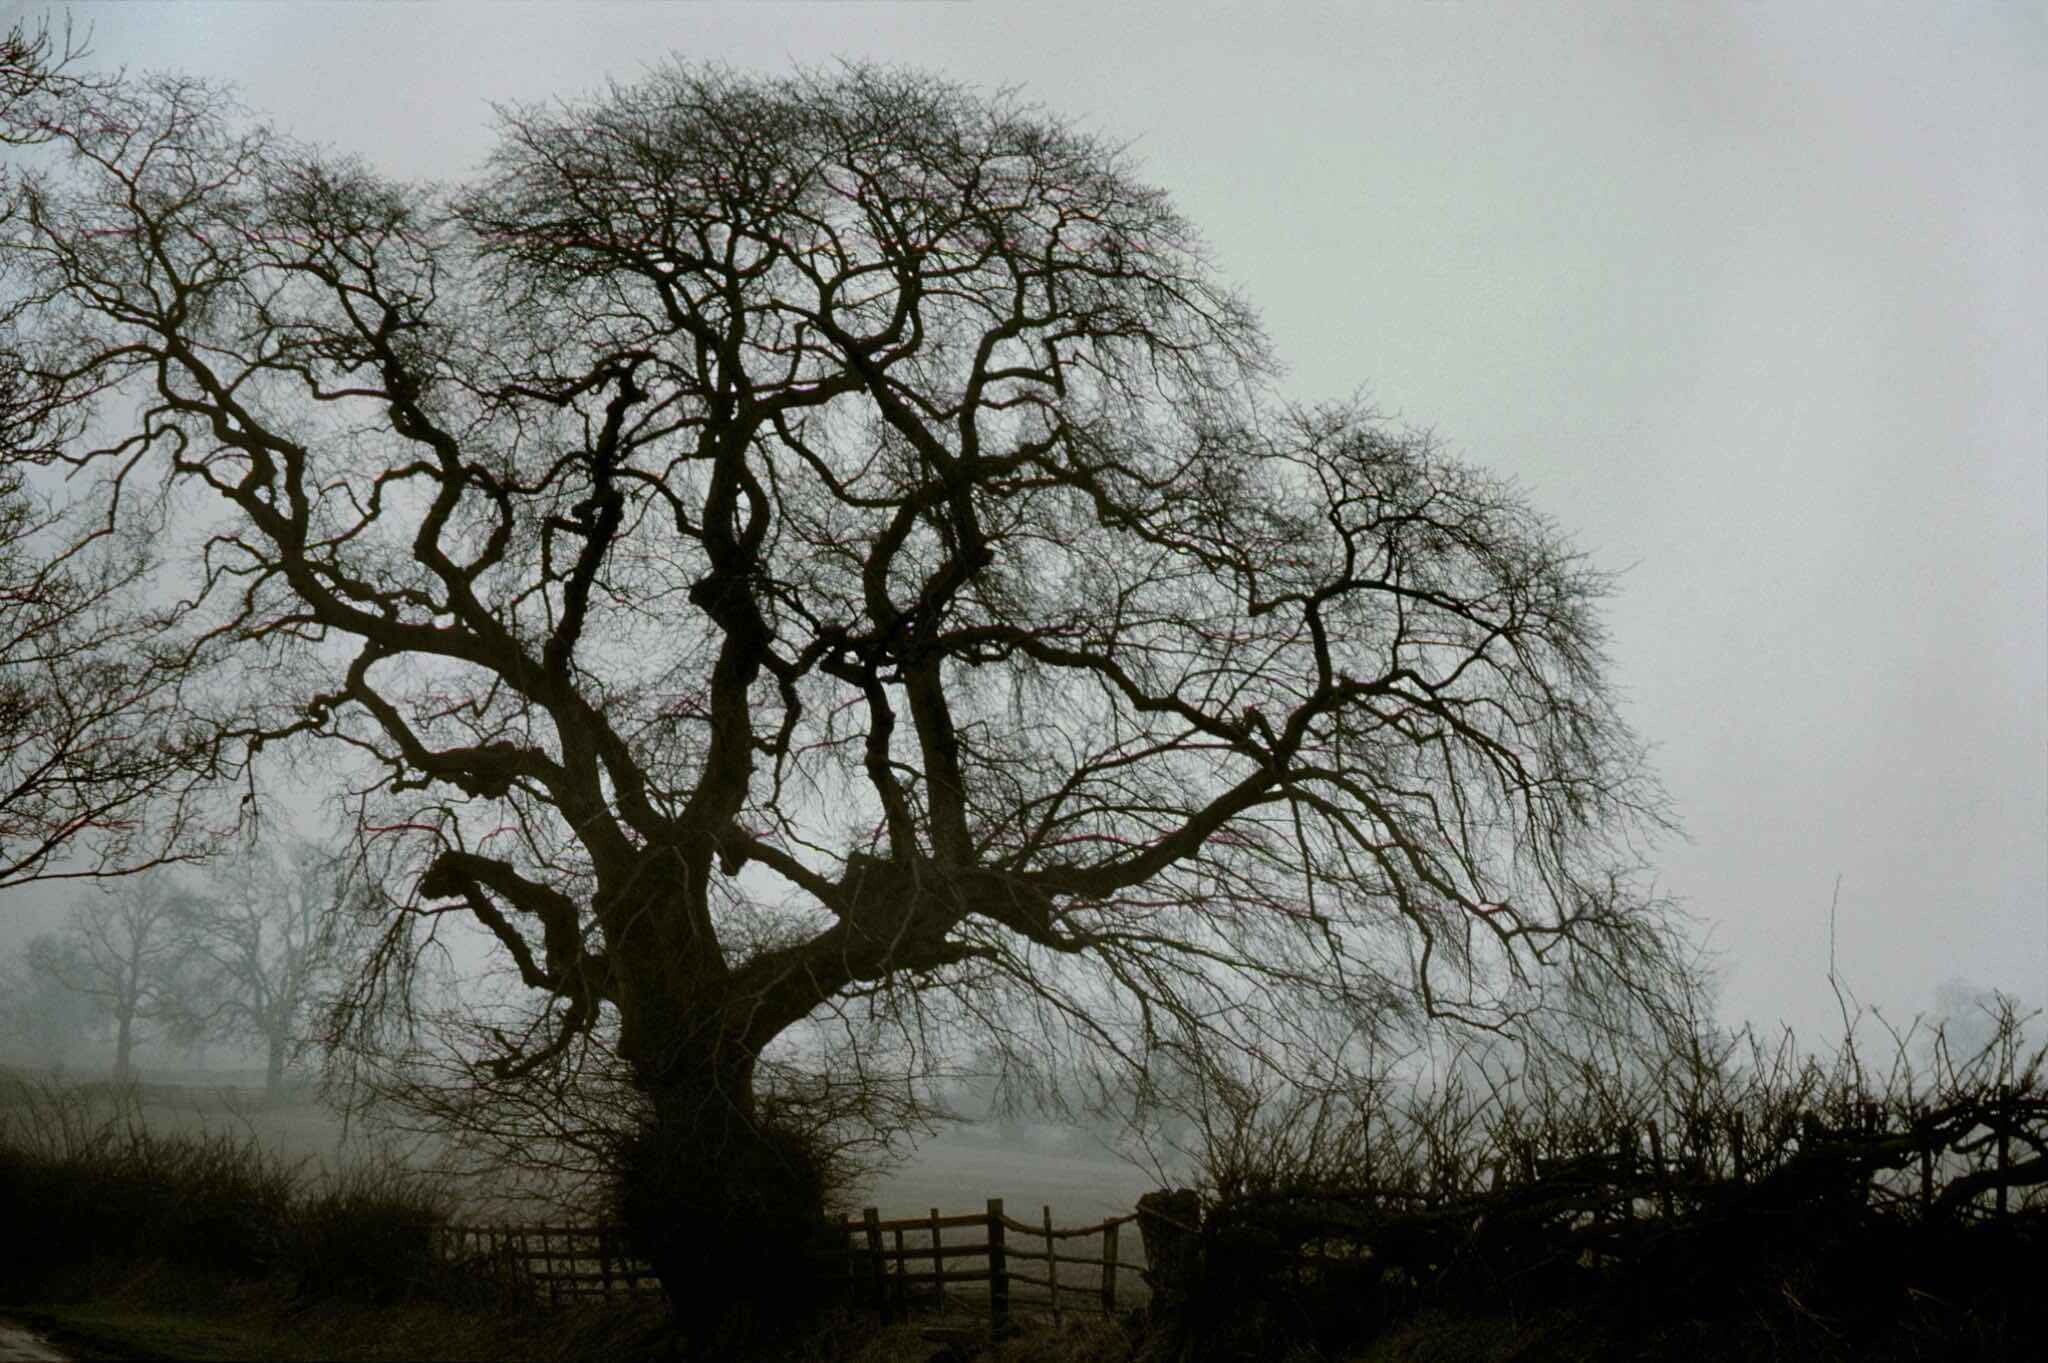 1977 год, Дербишир, Великобритания, голый дуб. Фотограф Франк Хорват